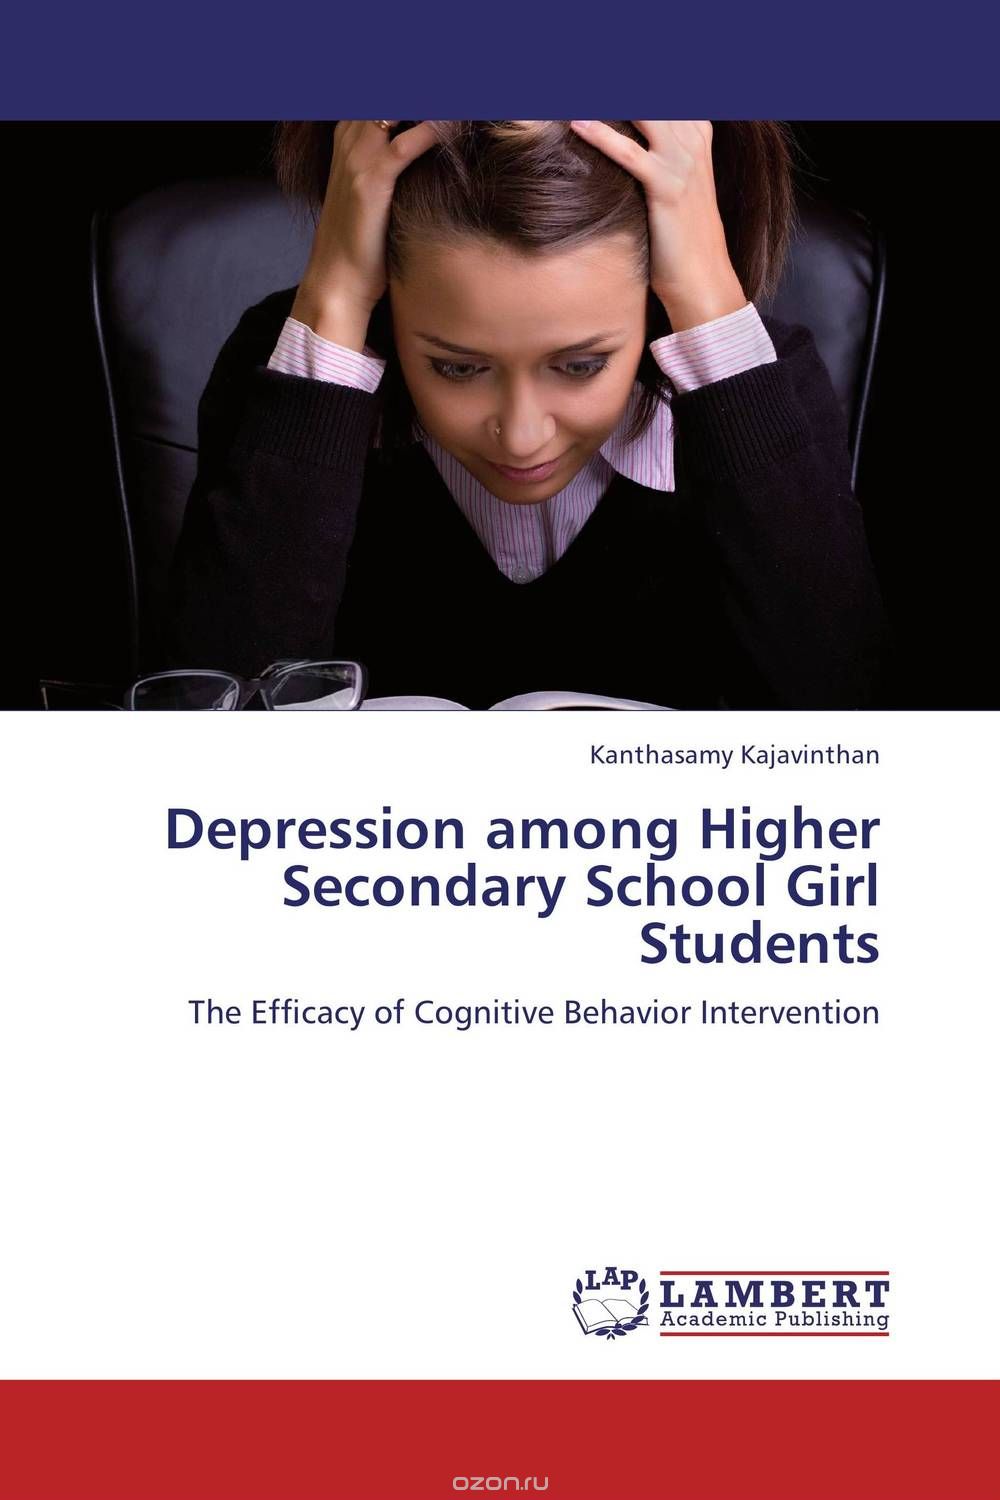 Скачать книгу "Depression among Higher Secondary School Girl Students"